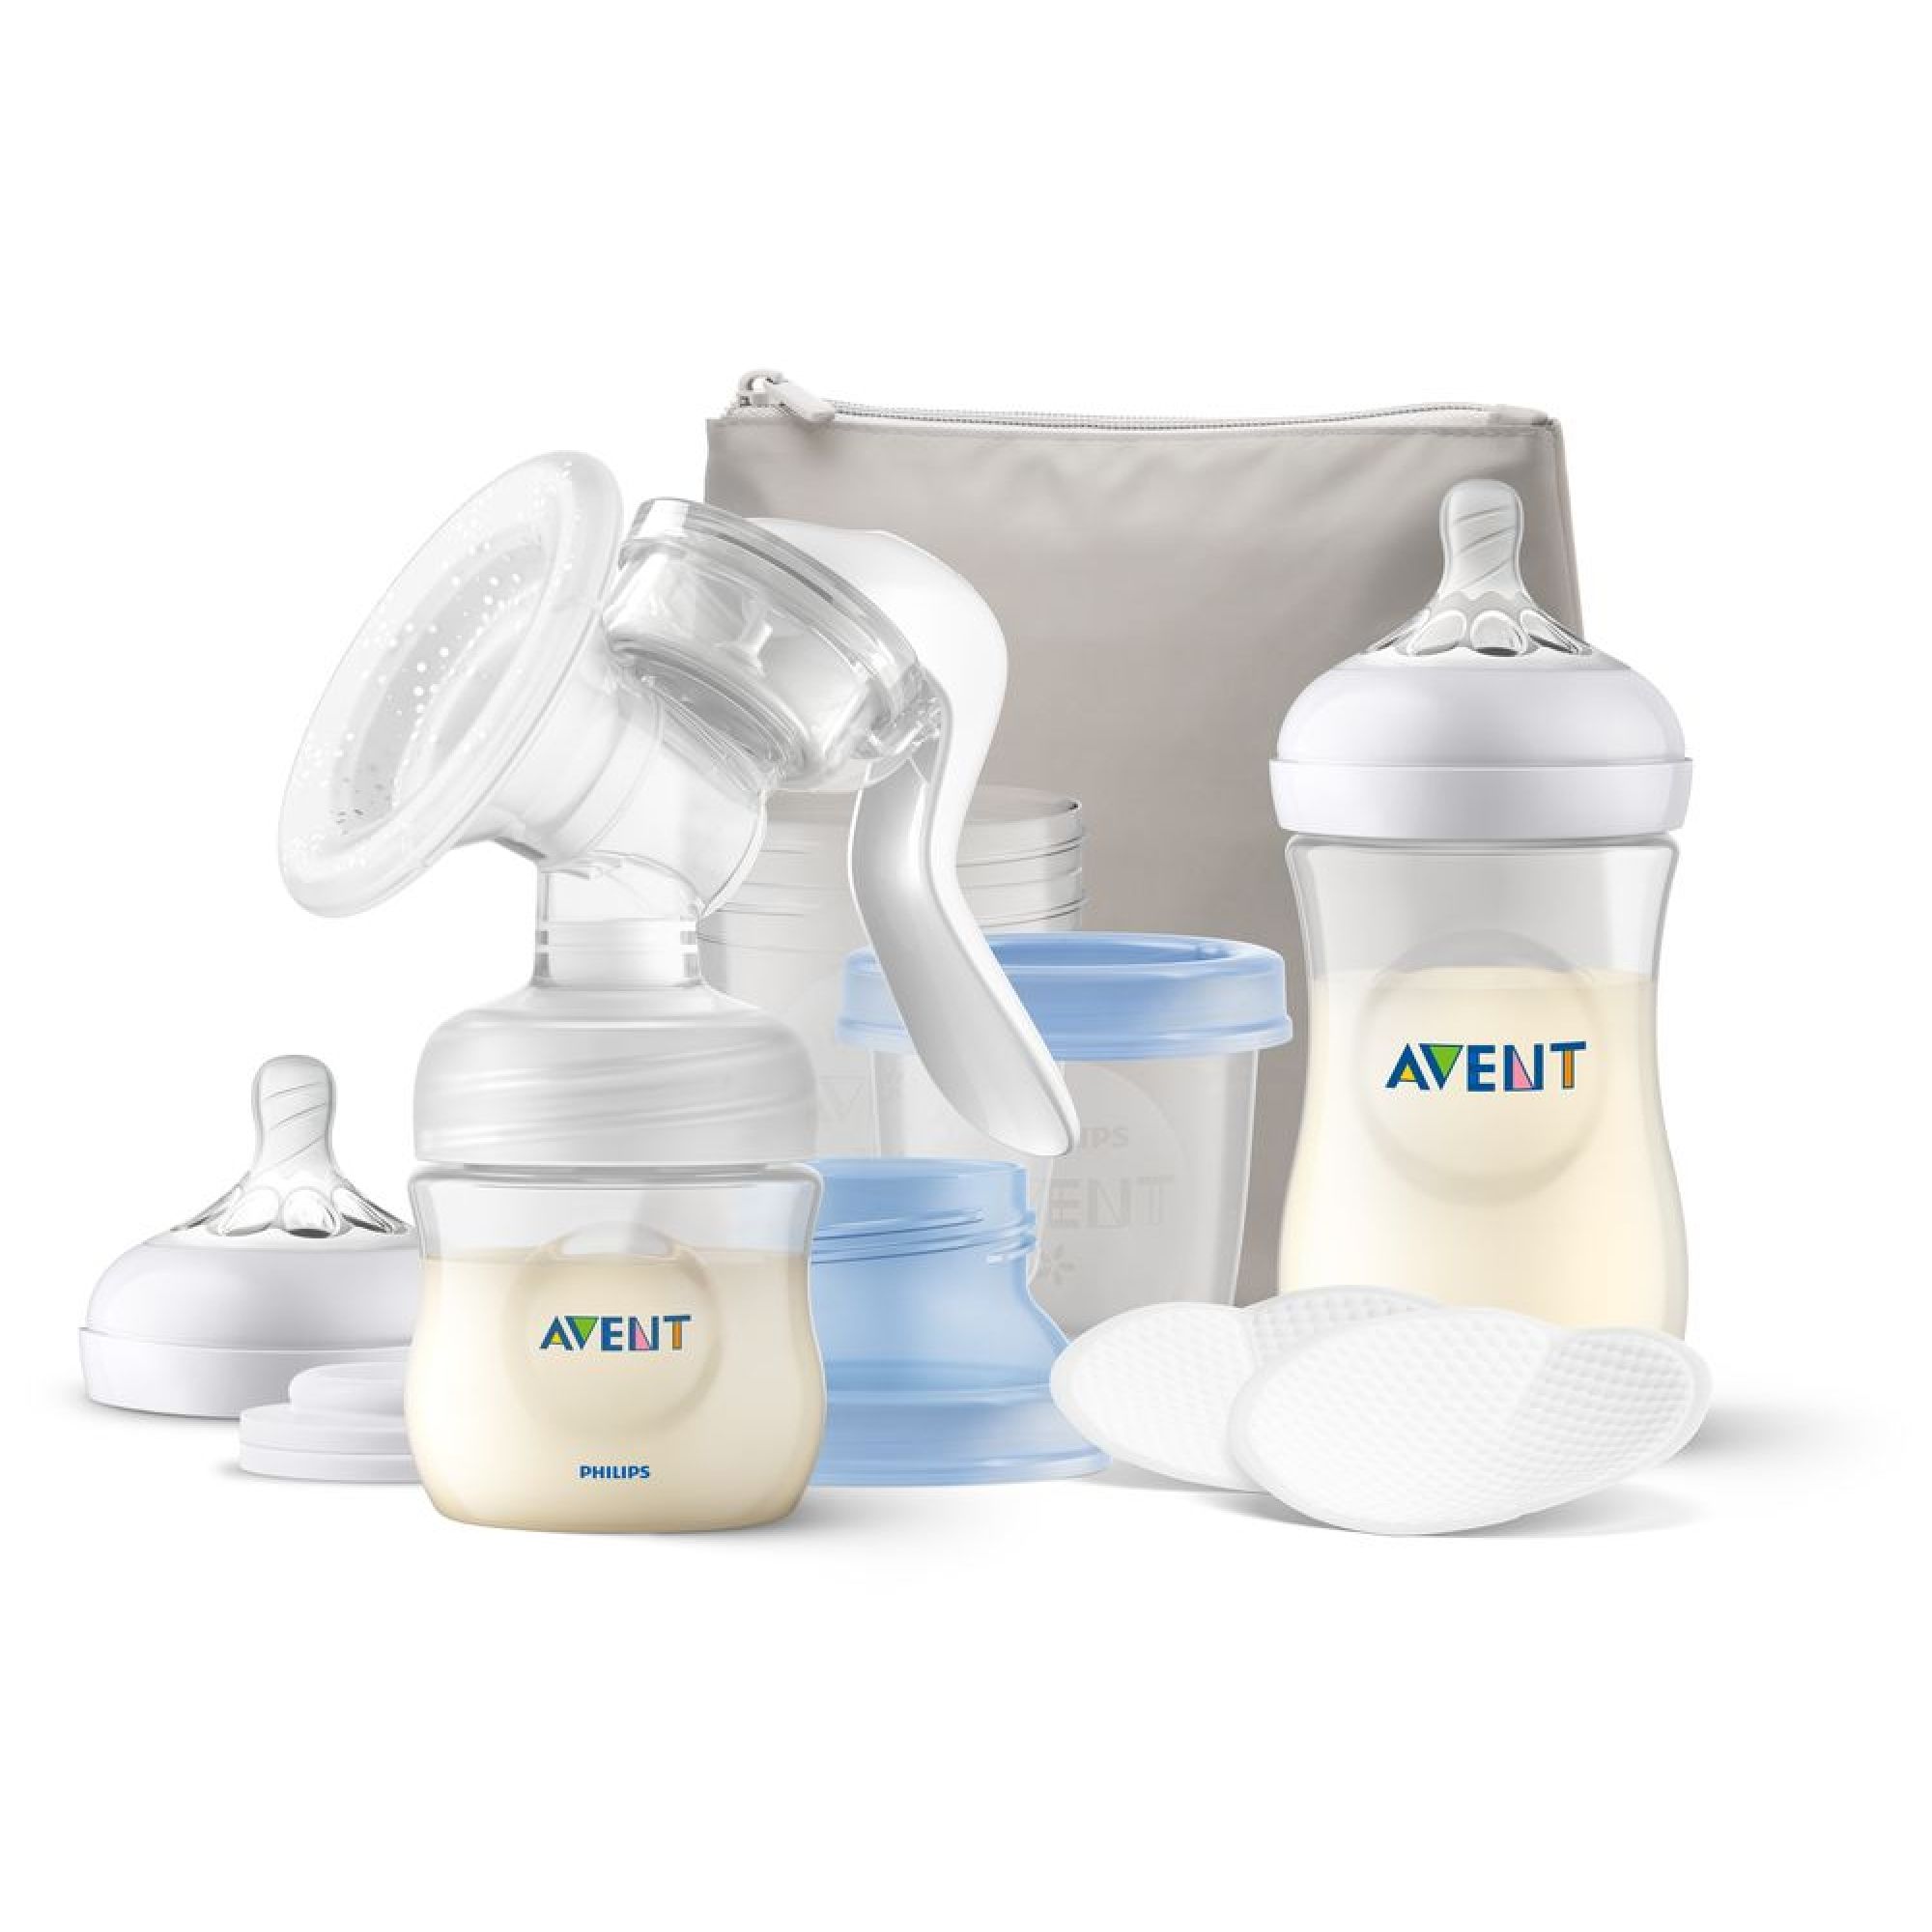 Les accessoires pour l'allaitement : tire-lait, biberon, soutien gorges